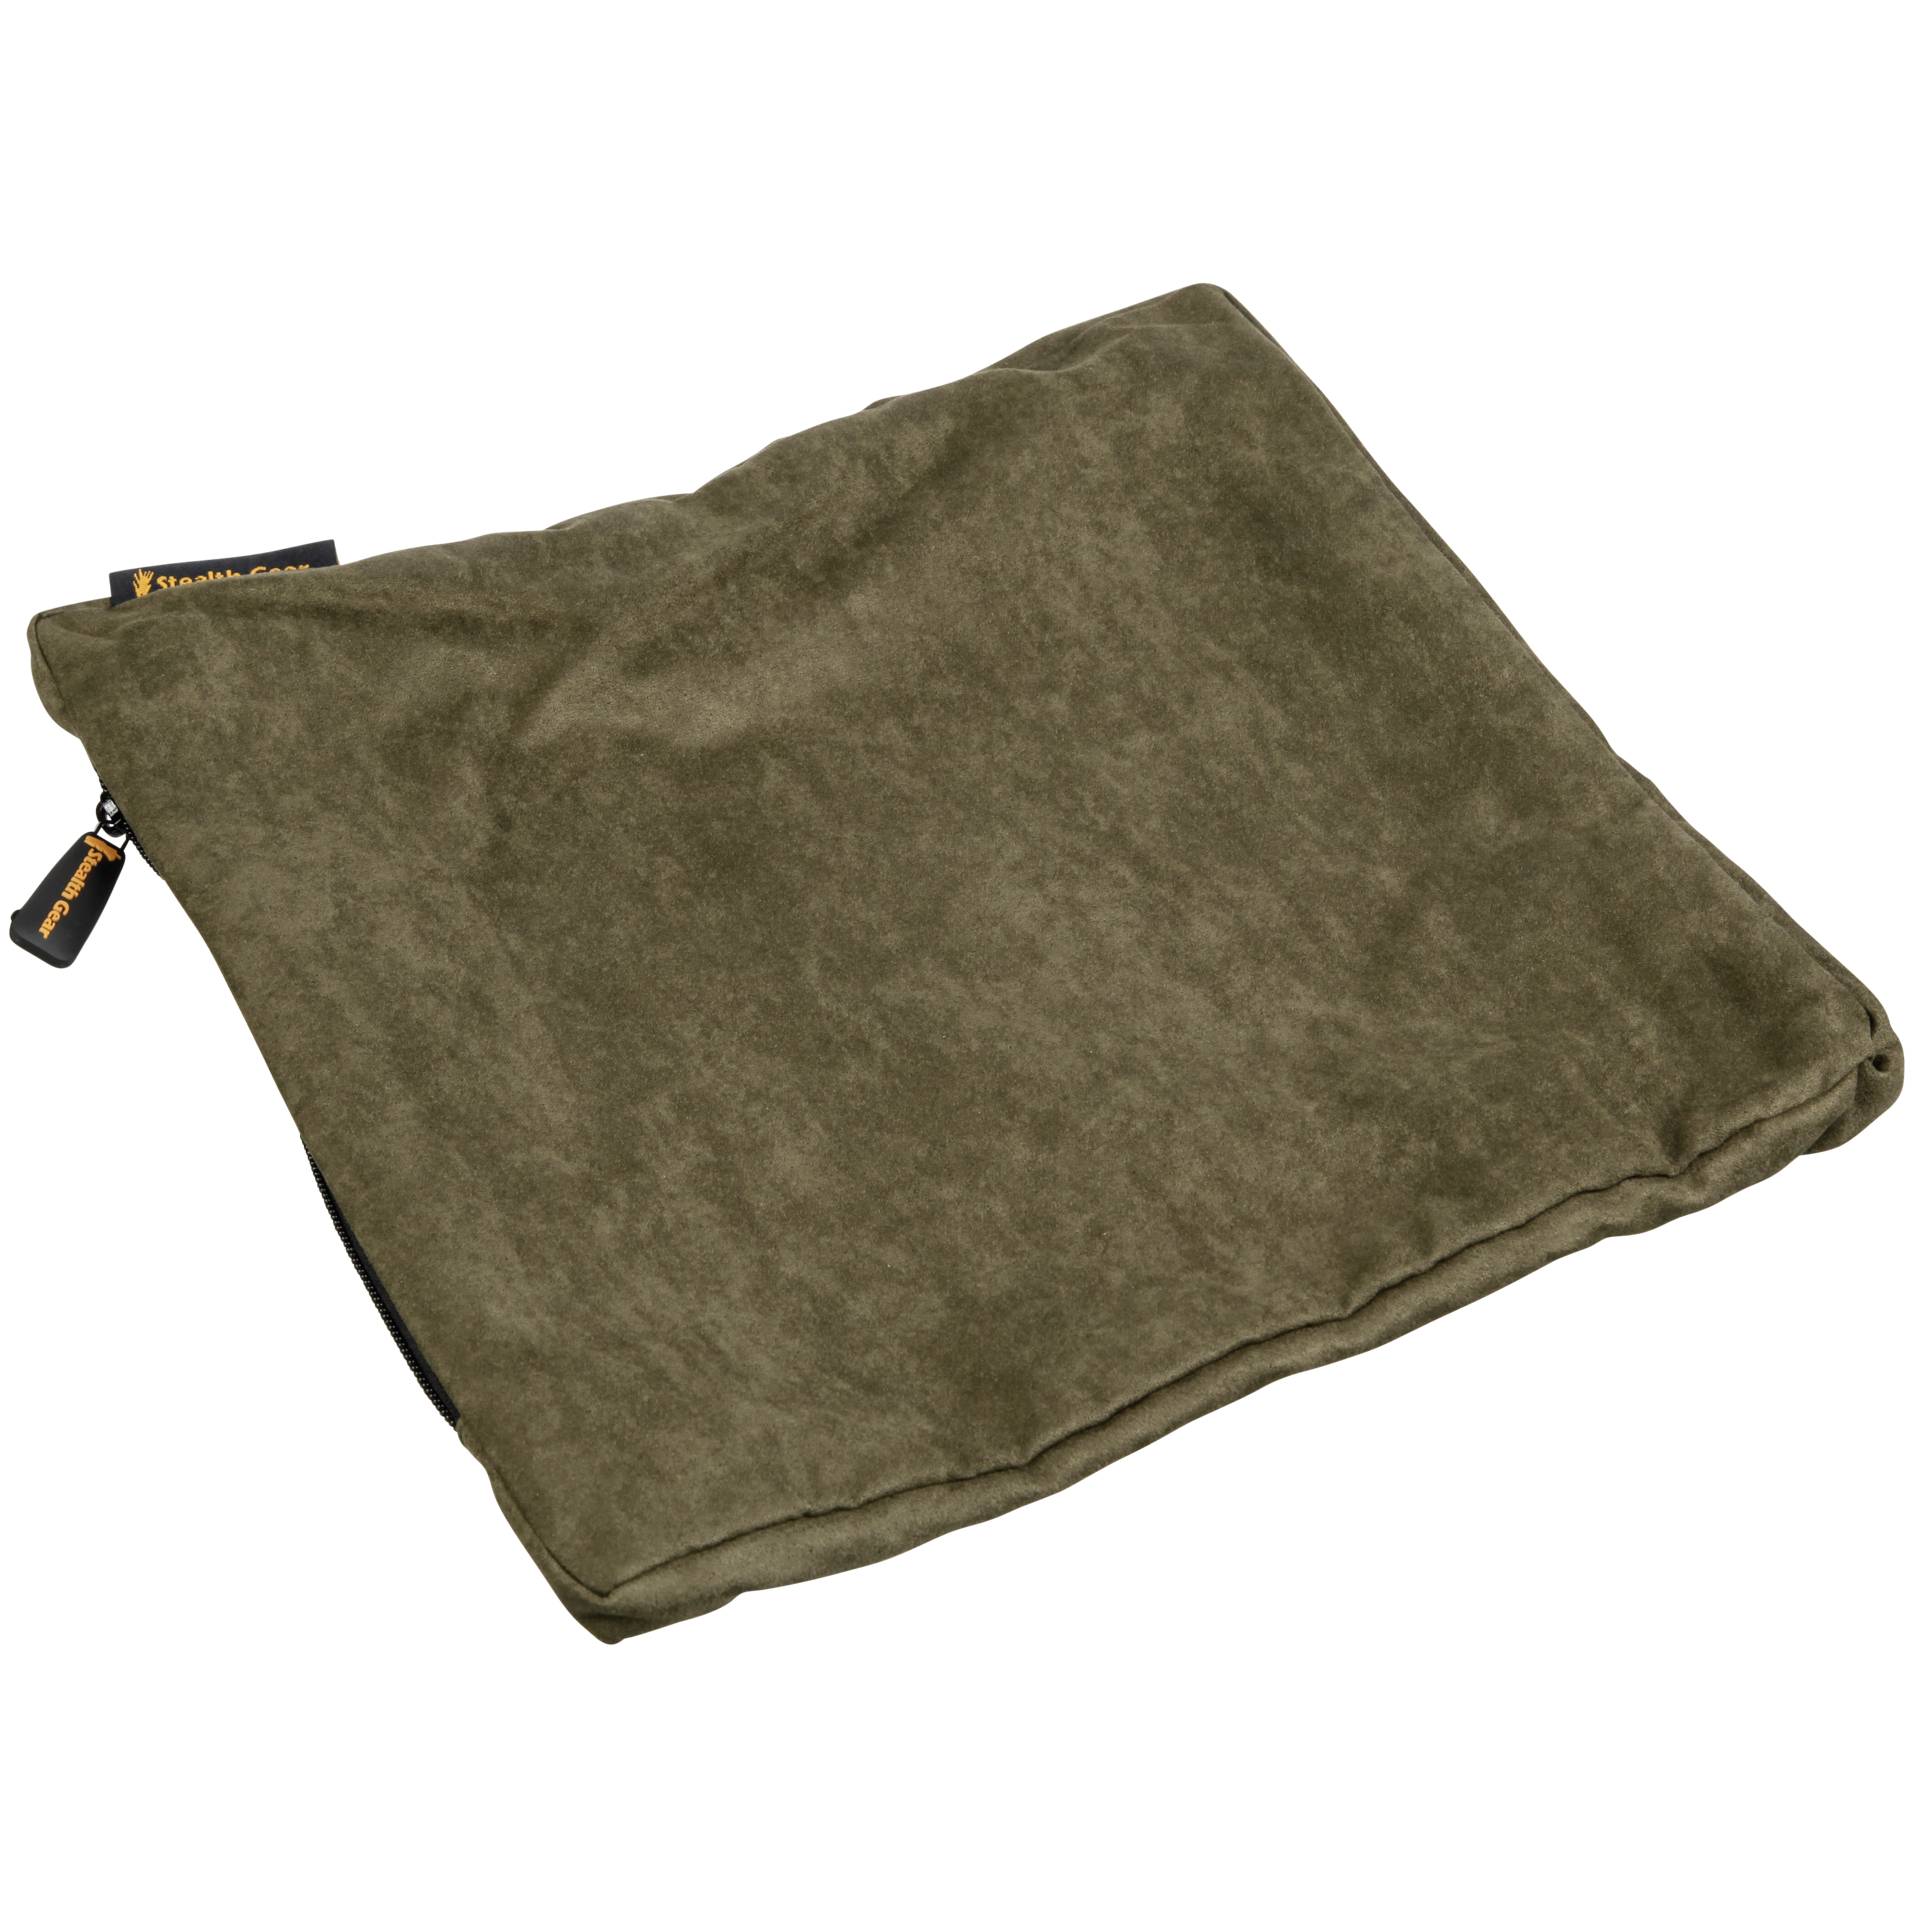 Stealth Gear Extreme Flat Bean Bag